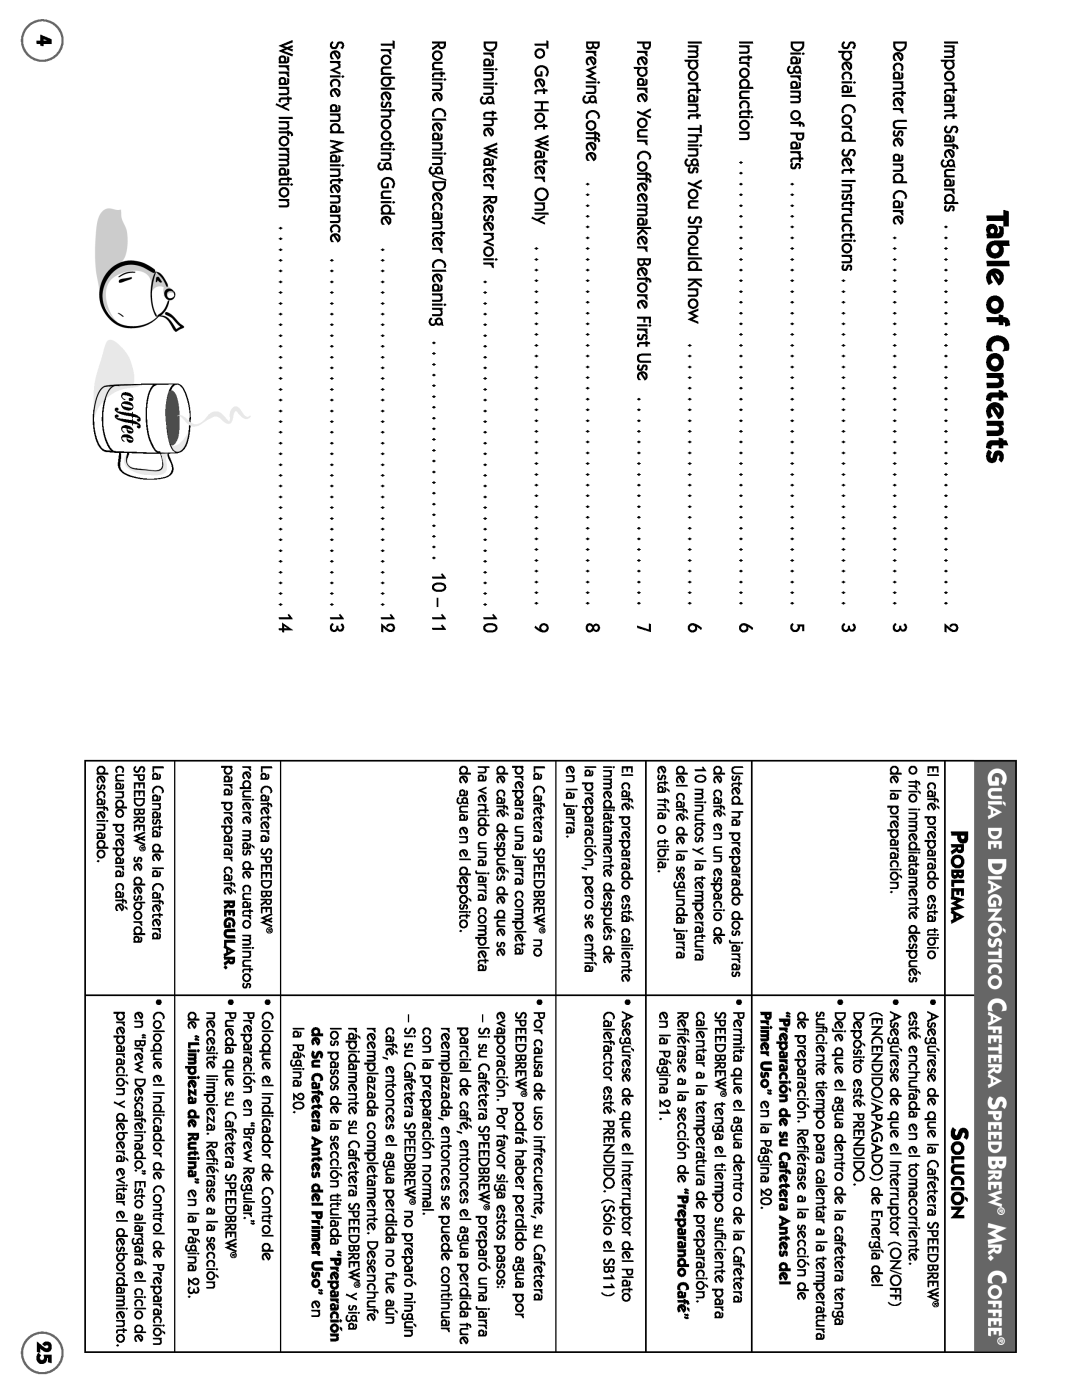 Mr. Coffee SB user manual Table of Contents, Guía De Diagnóstico Cafetera Speedbrew Mr. Coffee, Problema, Solución 